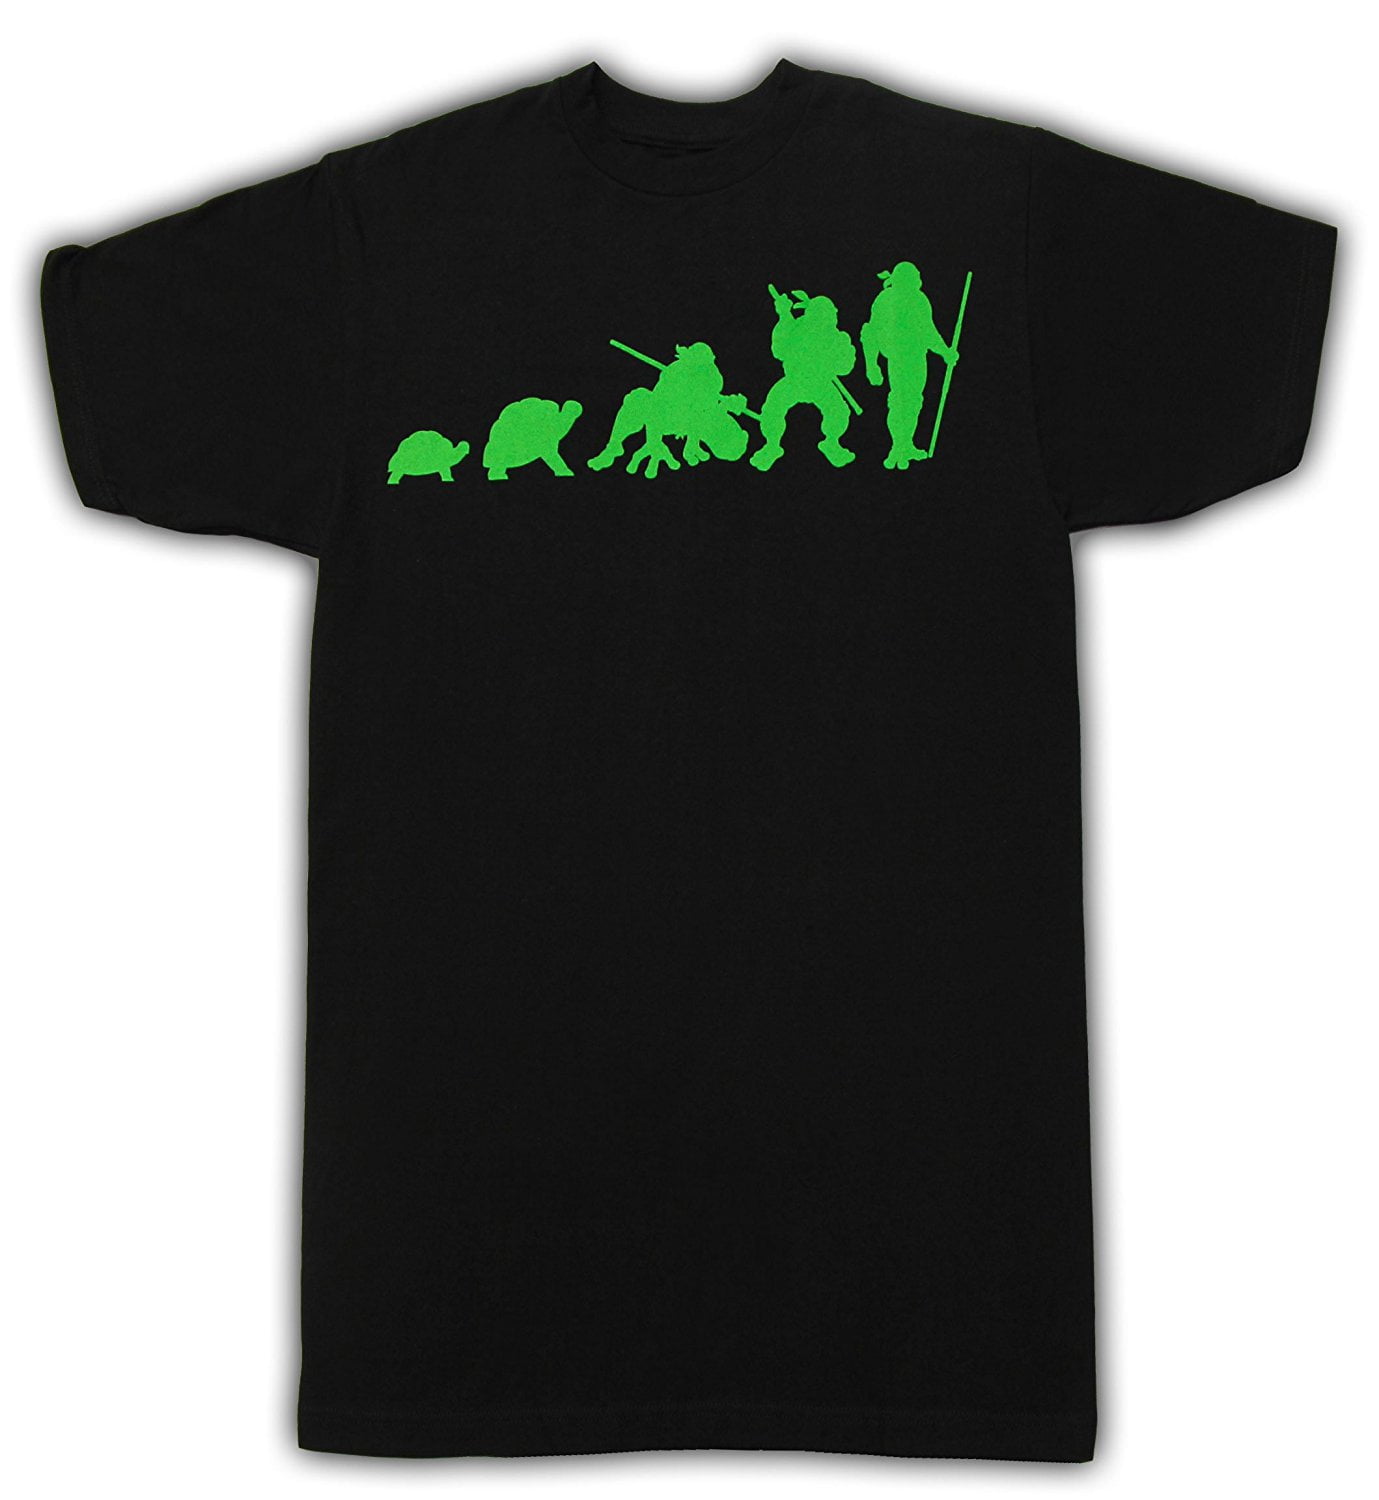 Teenage Mutant Ninja Turtles Costume T-Shirt - Shirtstore